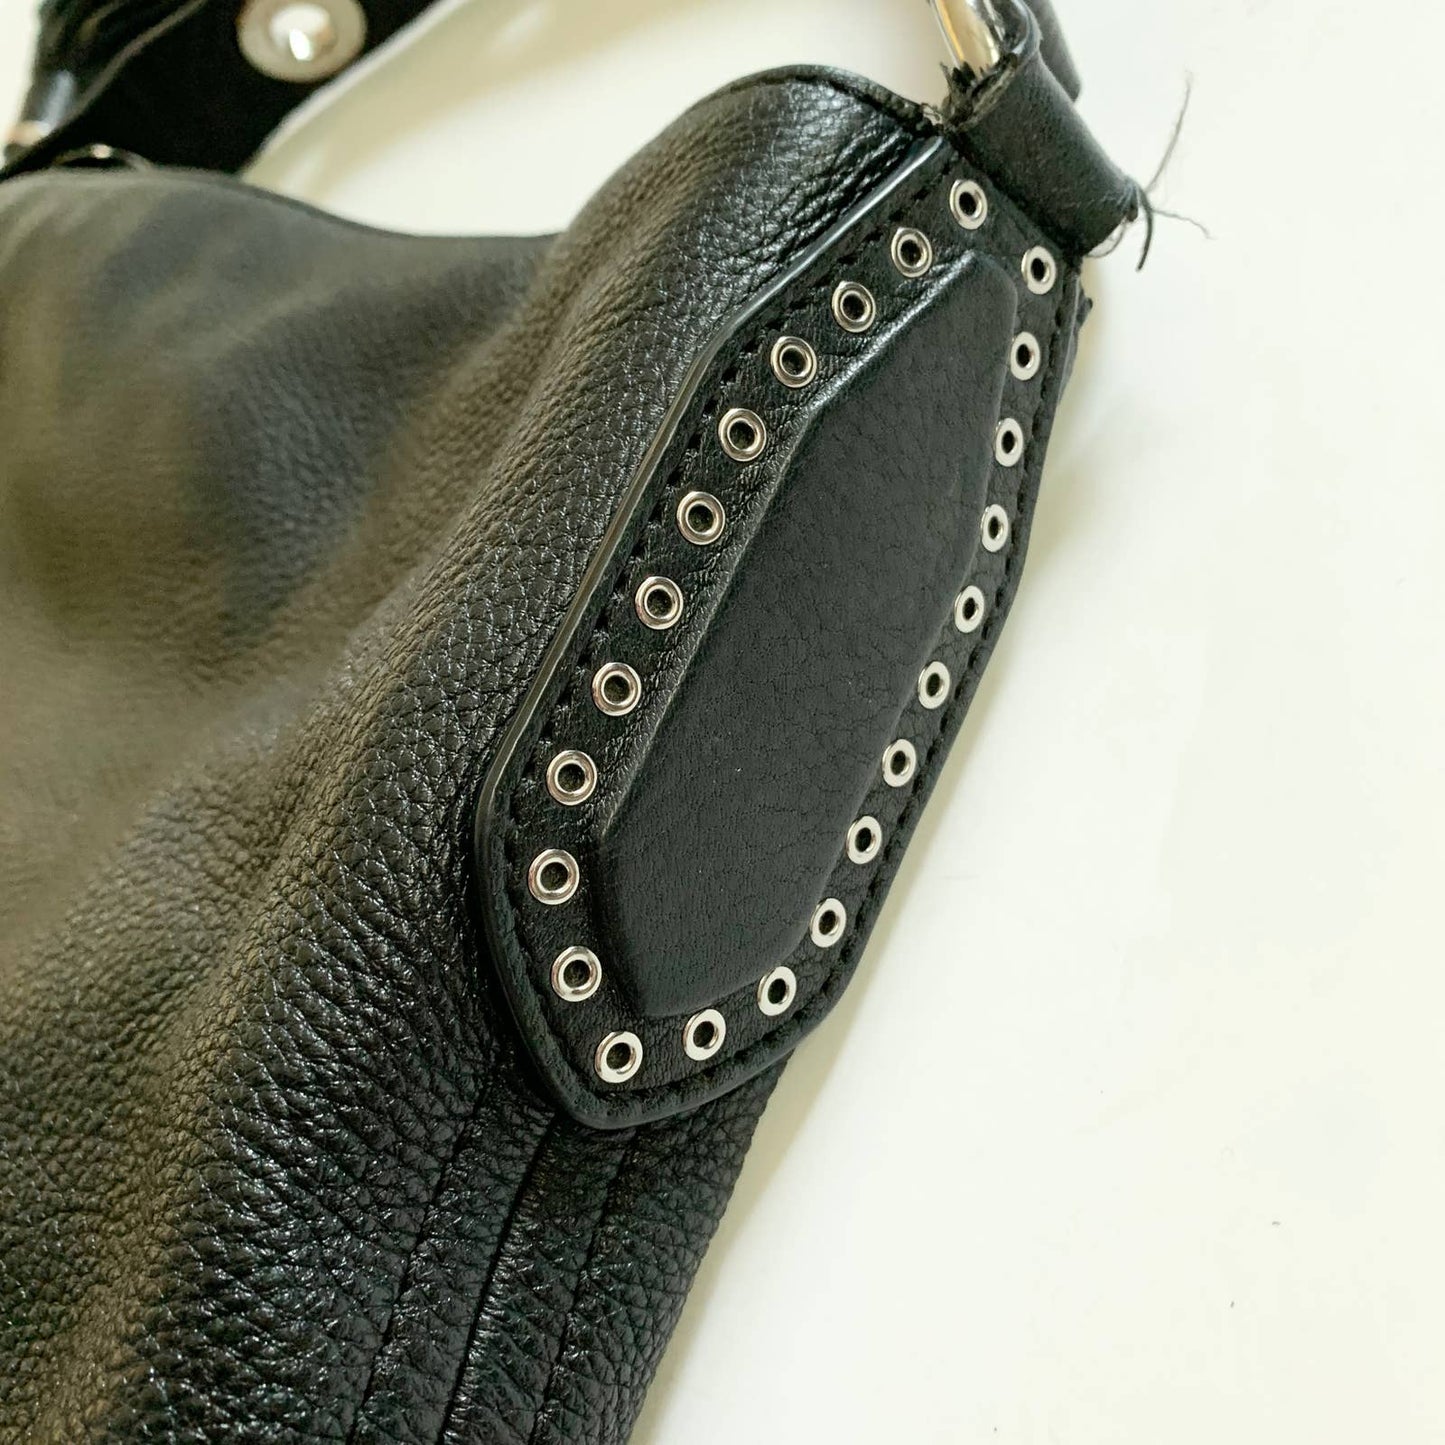 Michael Kors MK Pebbled Leather Large Black Studded Shoulder Bag Purse